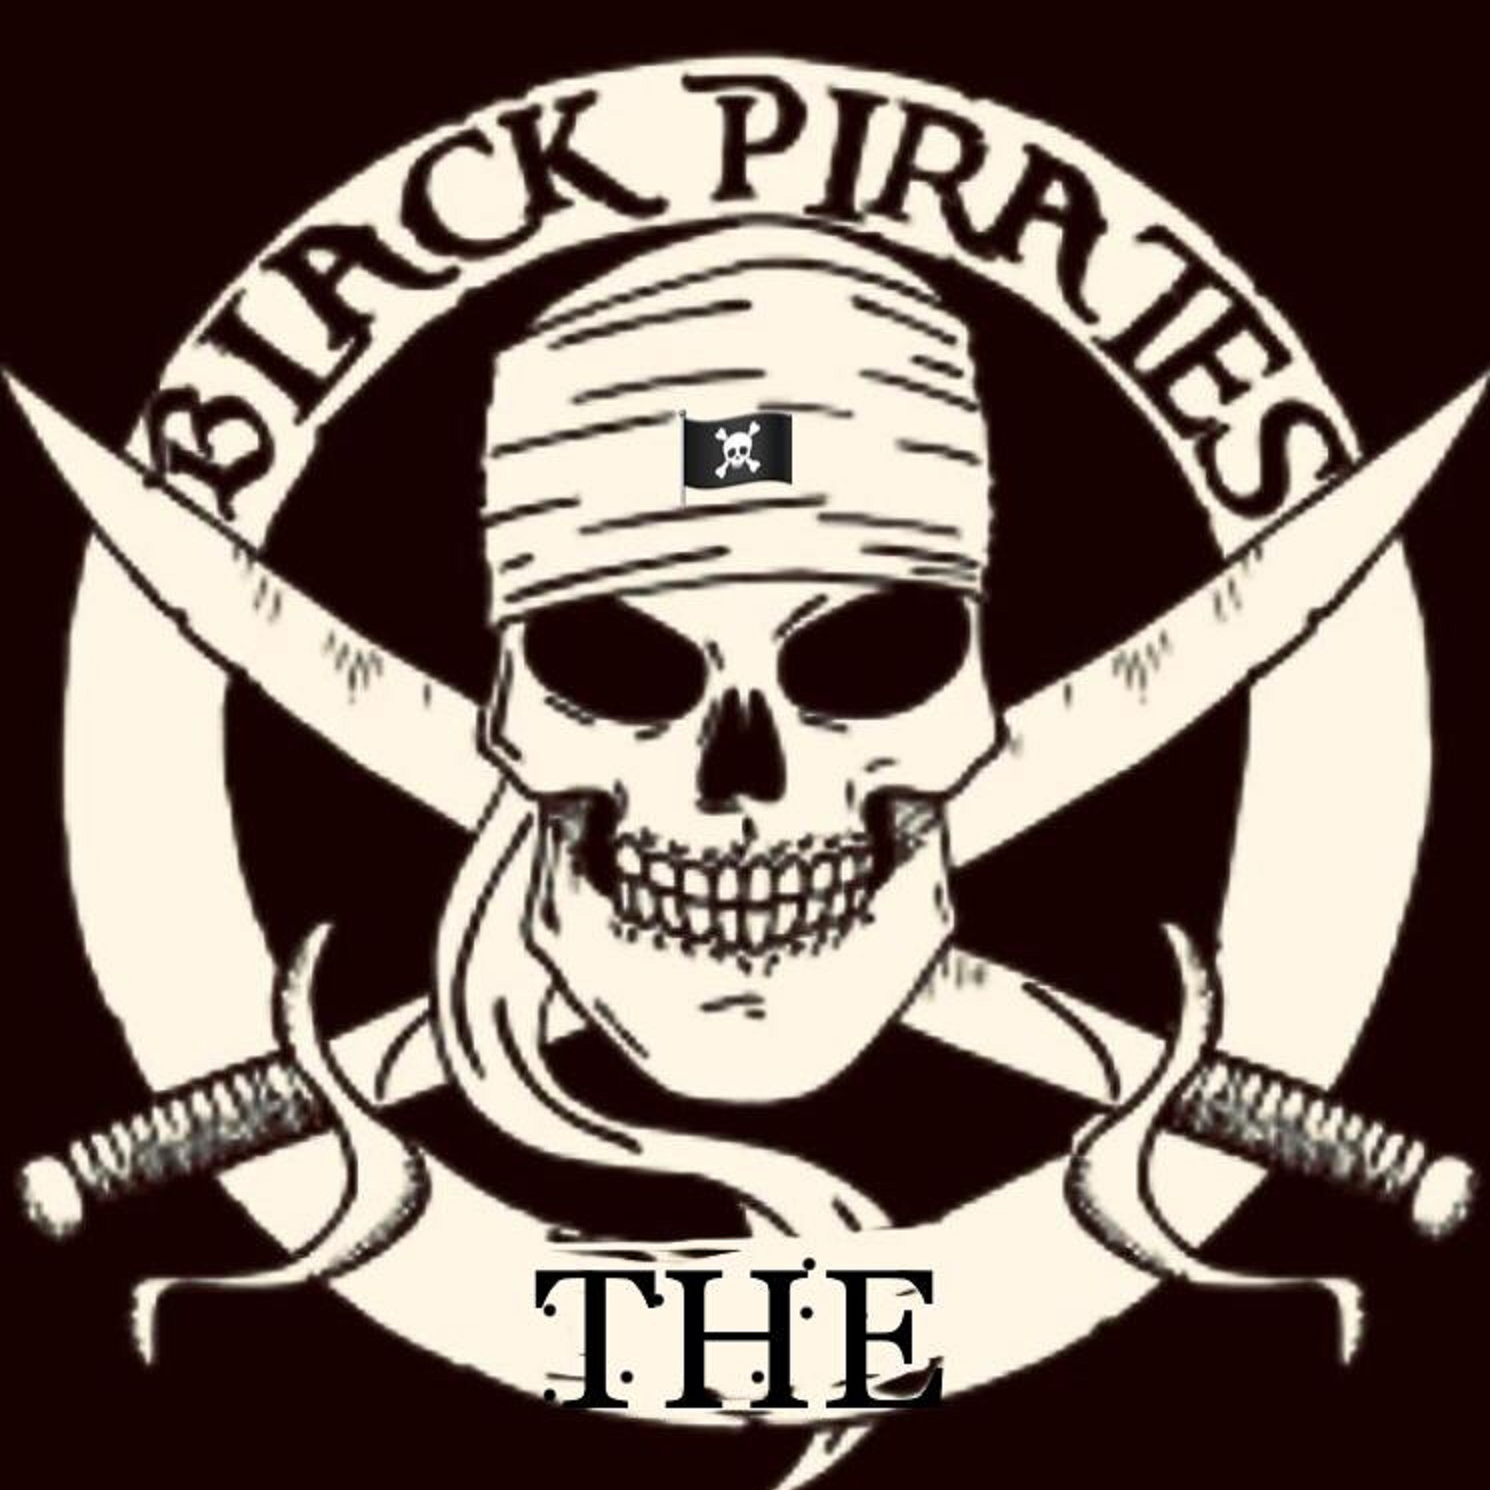 The Black Pirates HC